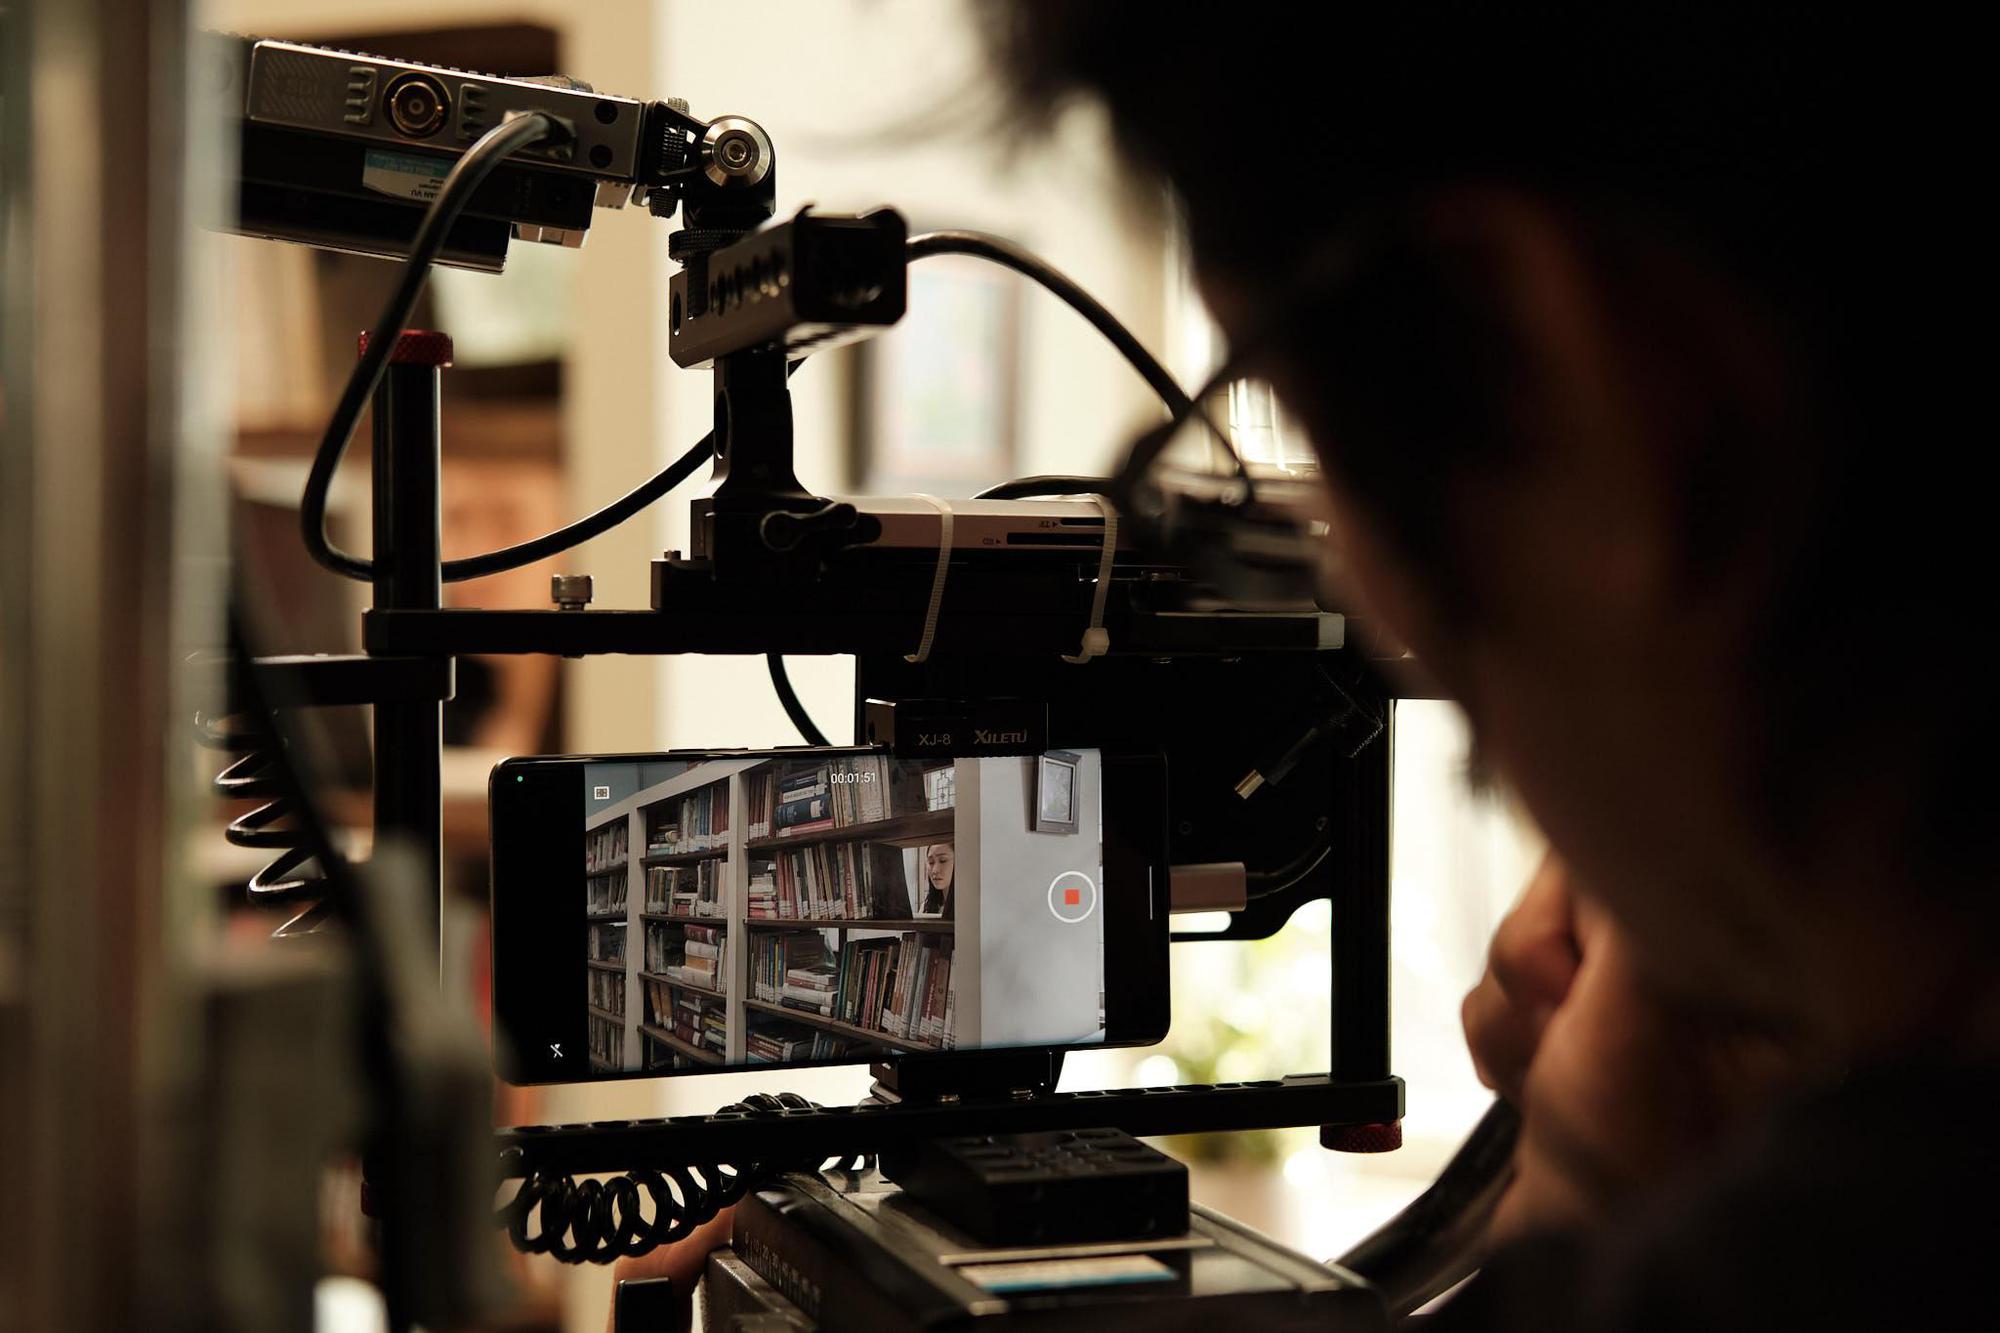 Lần đầu tiên một bộ phim điện ảnh Việt Nam chuyển thể từ tác phẩm nổi tiếng sẽ được quay hoàn toàn bằng điện thoại - Ảnh 4.